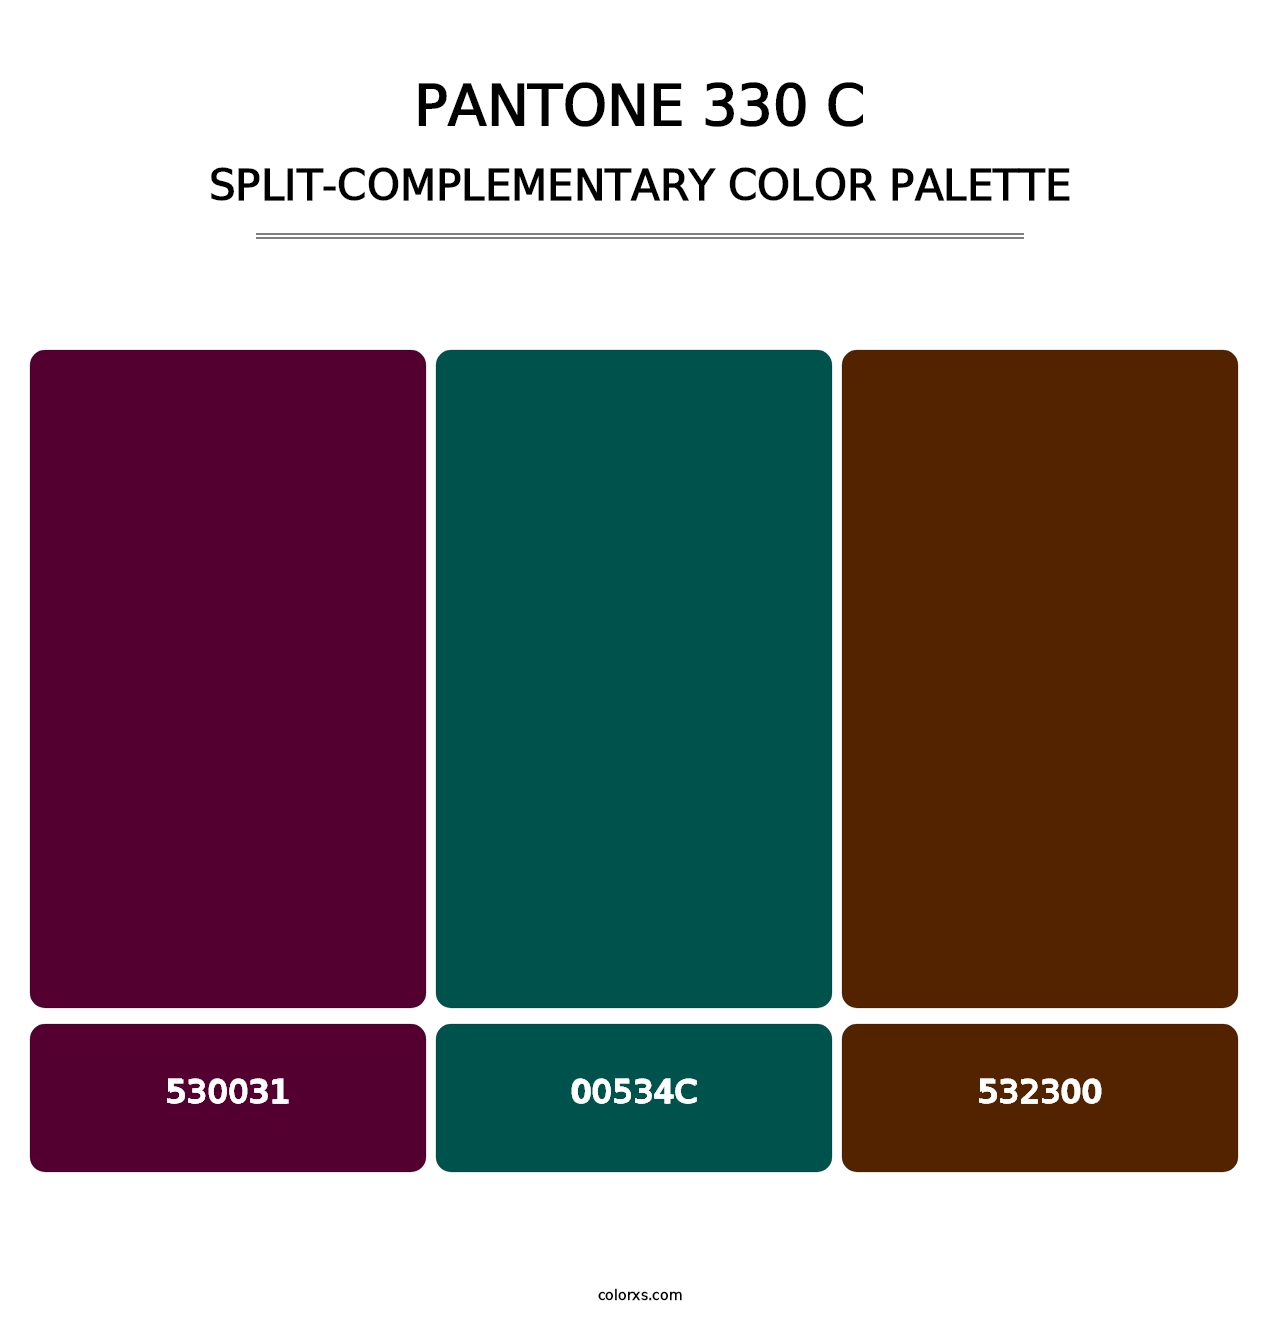 PANTONE 330 C - Split-Complementary Color Palette